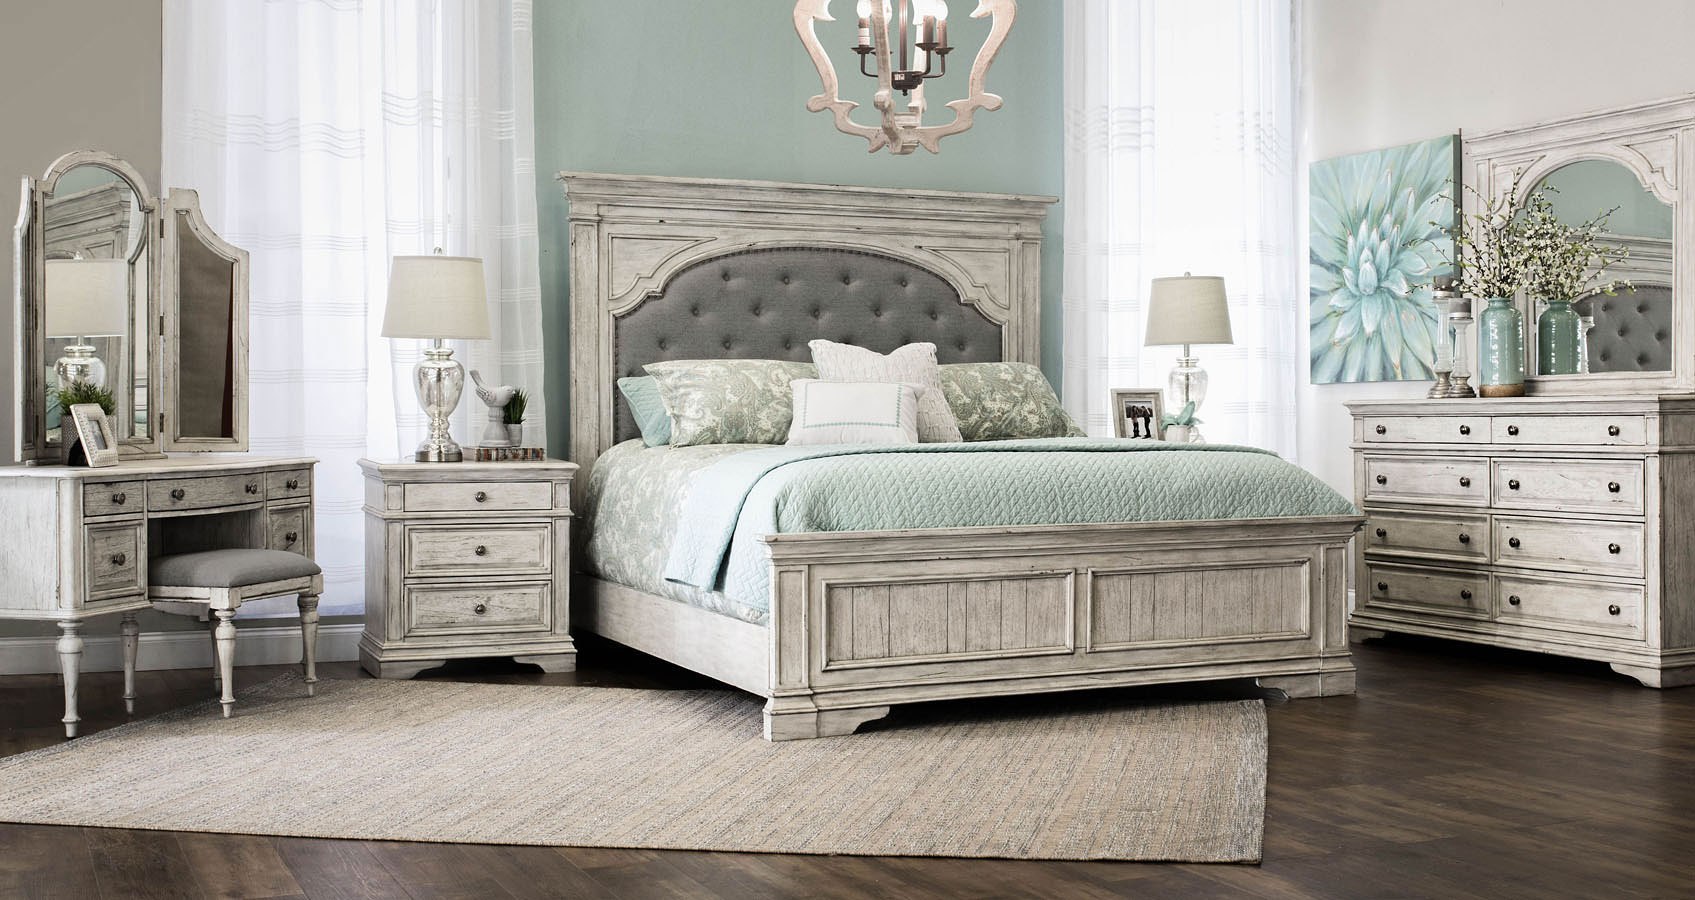 highland park bedroom furniture